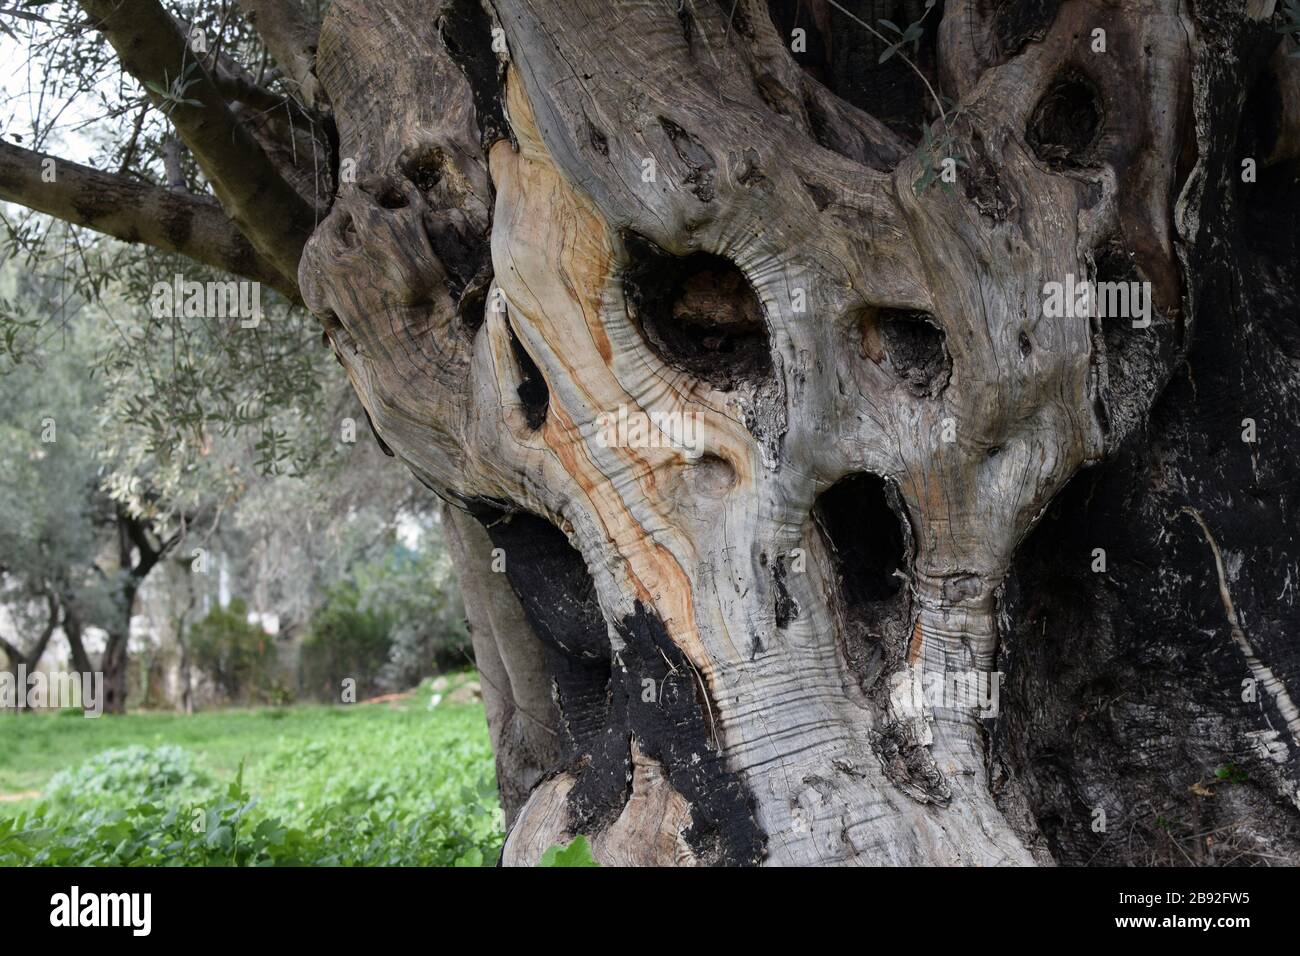 Die alte Ölbaumstammmulde sieht aus wie schreiendes Monster. Stockfoto